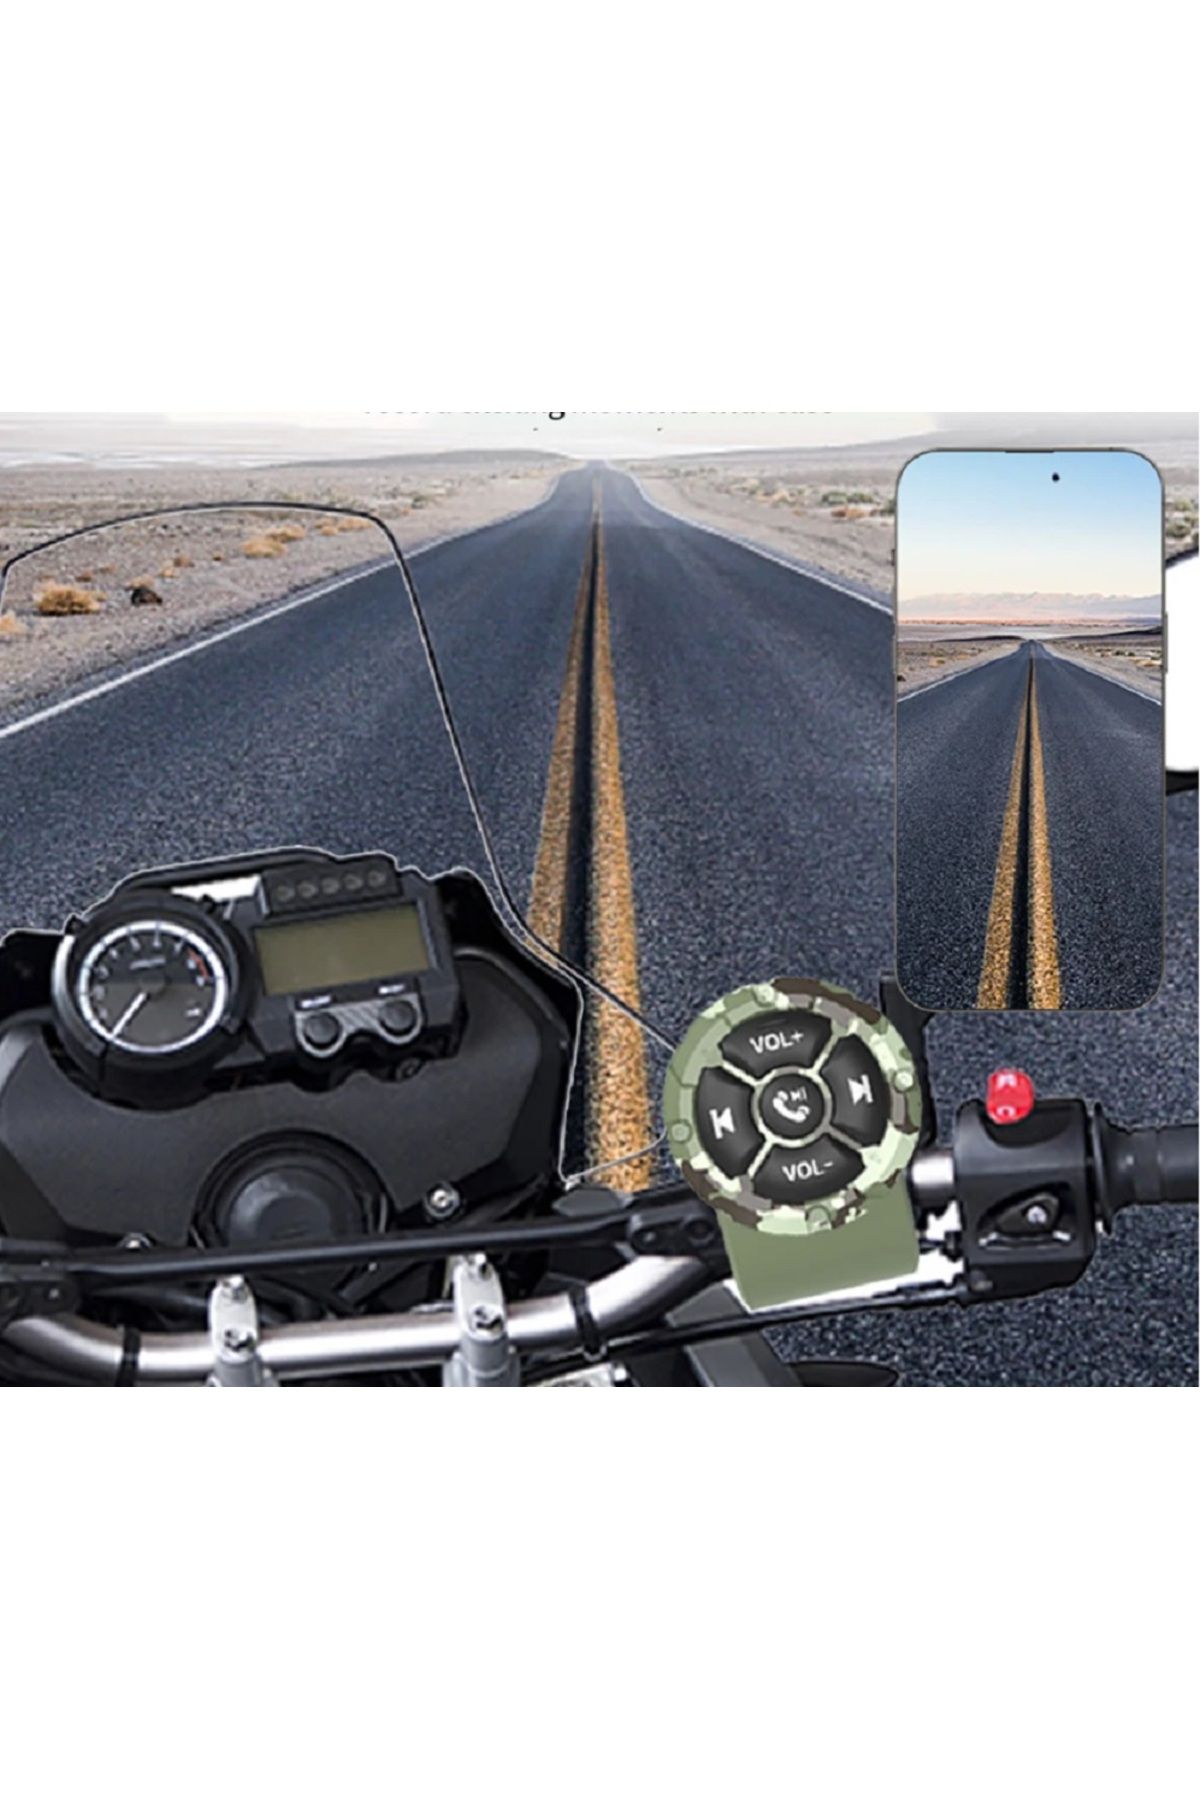 PeriStore Kablosuz Bluetooth Uzaktan Kumanda. Motosiklet, Bisiklet Gidon, Araba Direksiyon için Yeşil Pilli